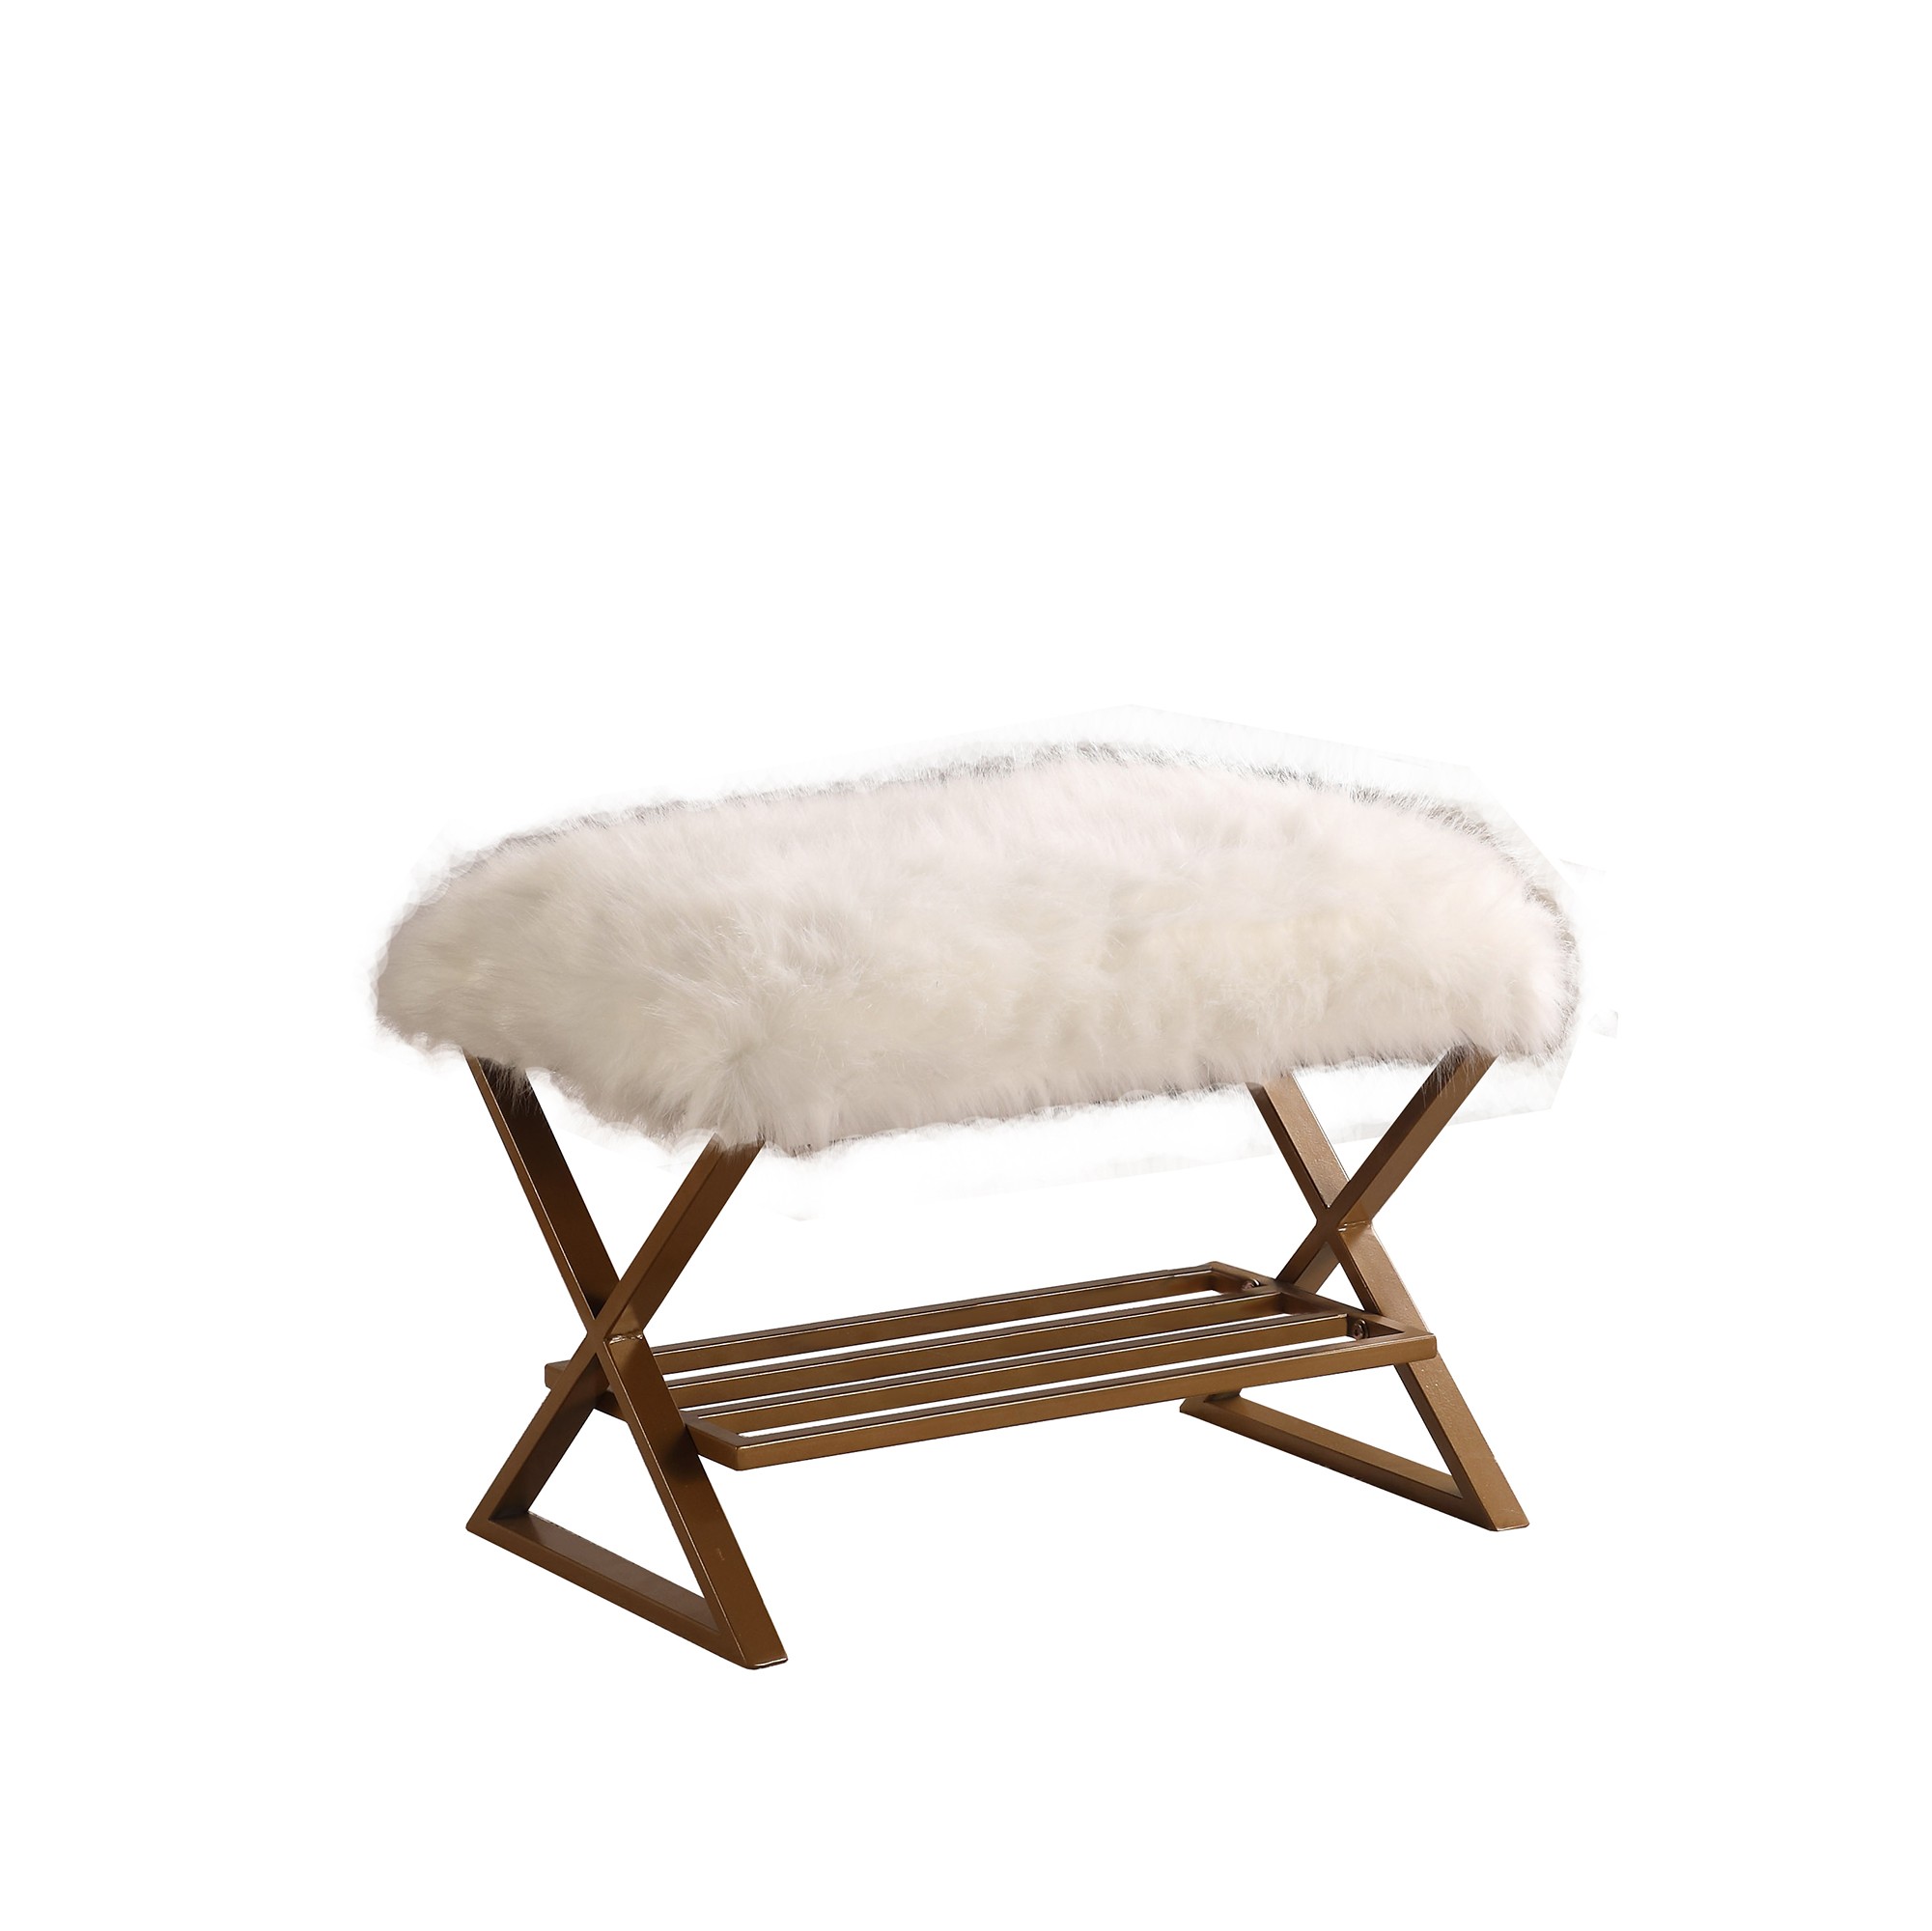 26" White Bohemian Faux Fur Vanity Bench